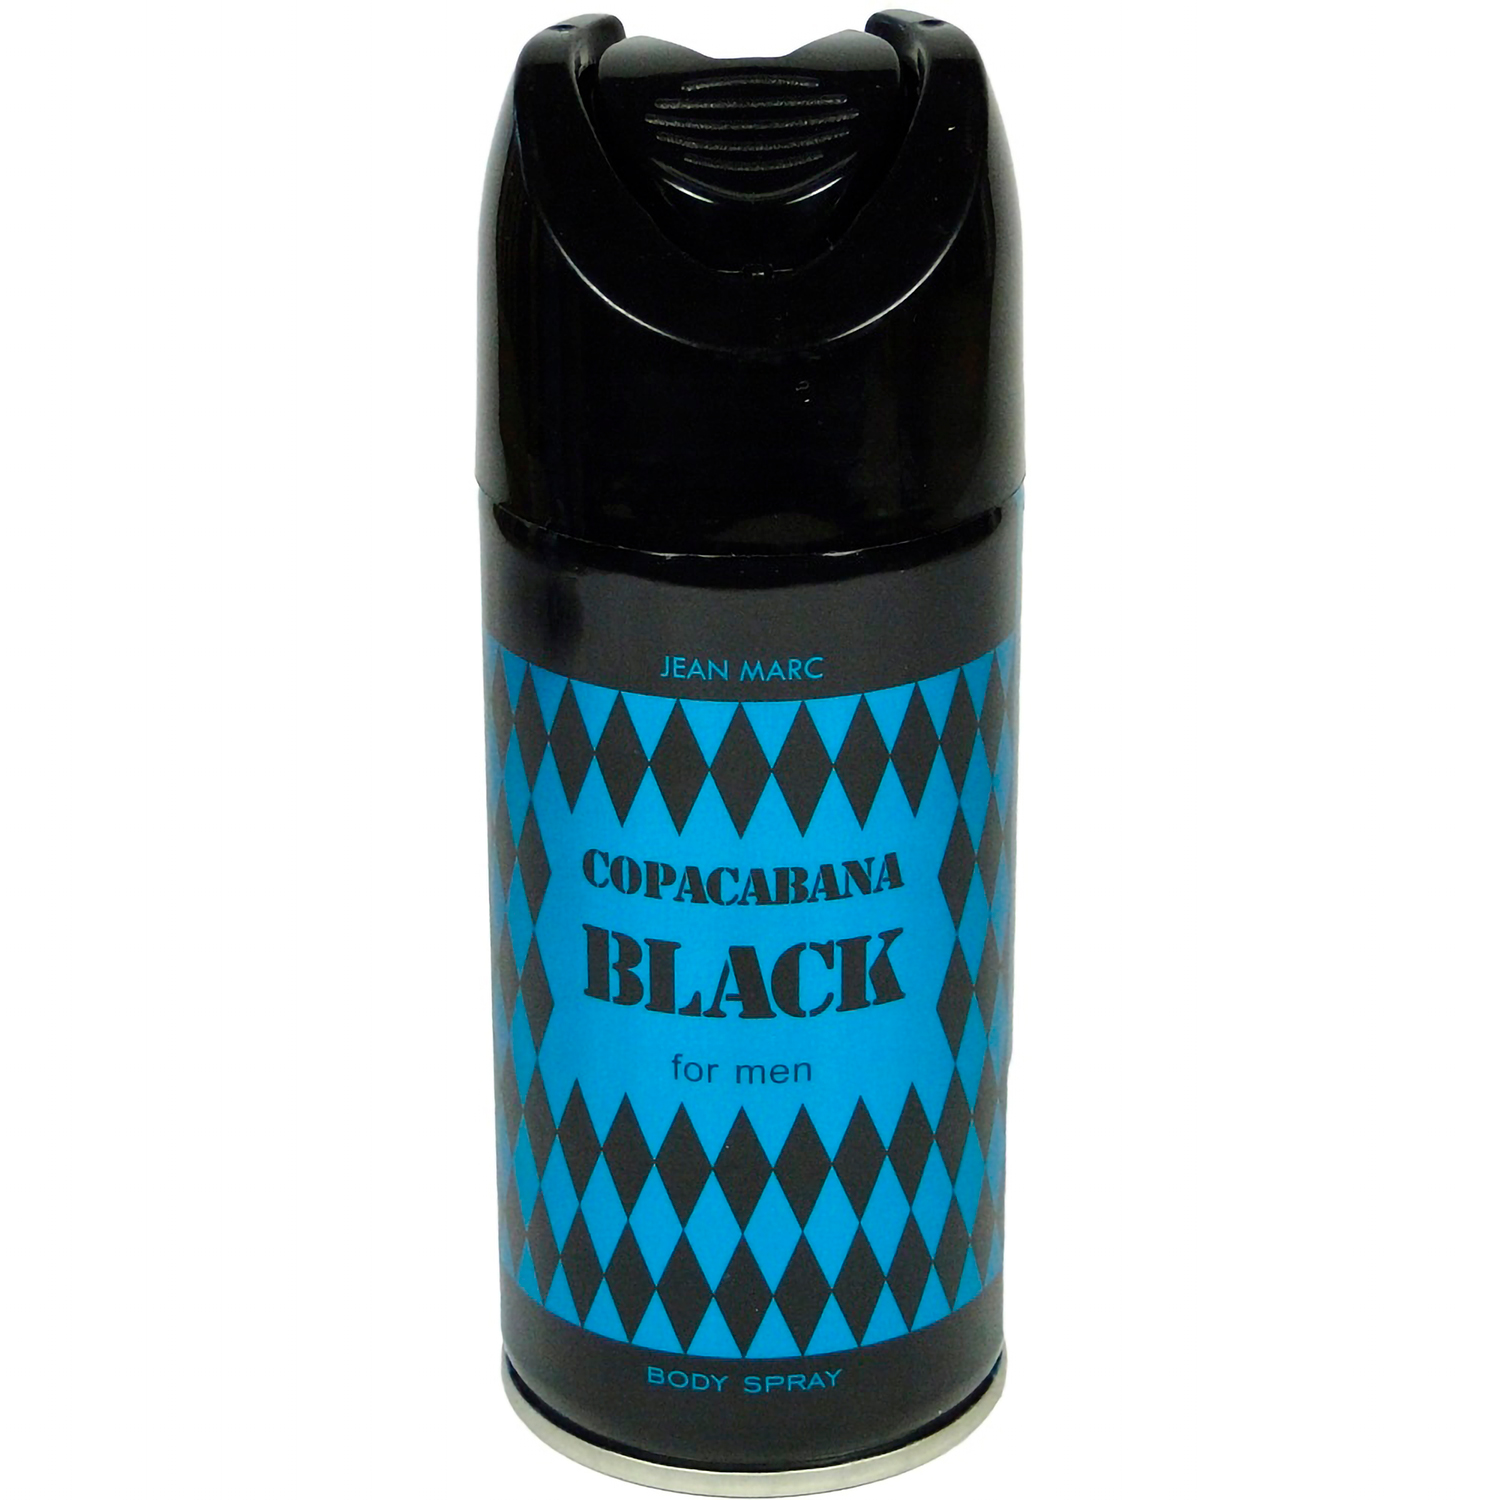 Дезодорант Jean Marc Мужской Copacabana Black аромат Восточно-папоротниковый 150 мл